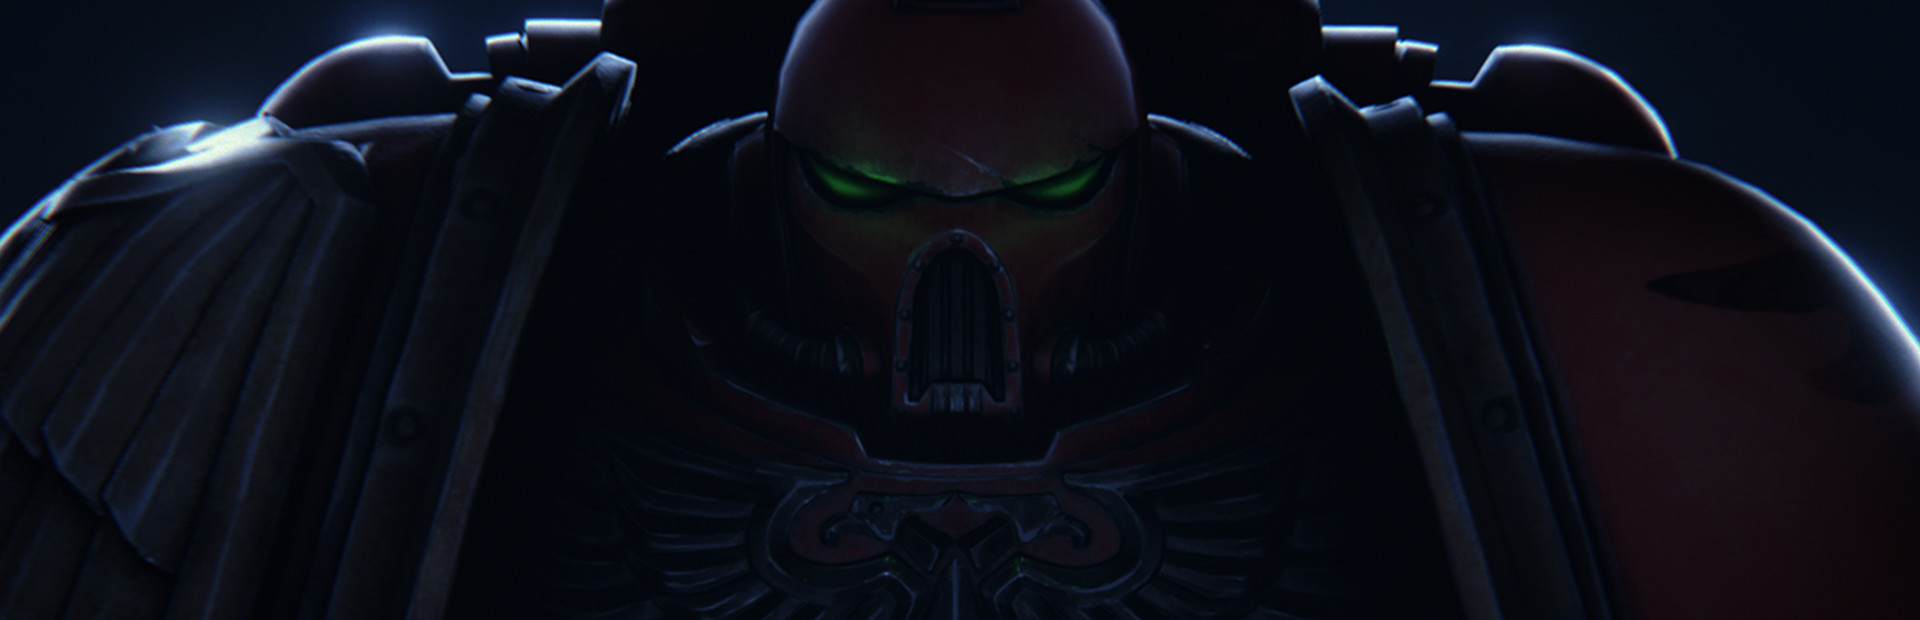 Warhammer 40,000: Regicide cover image